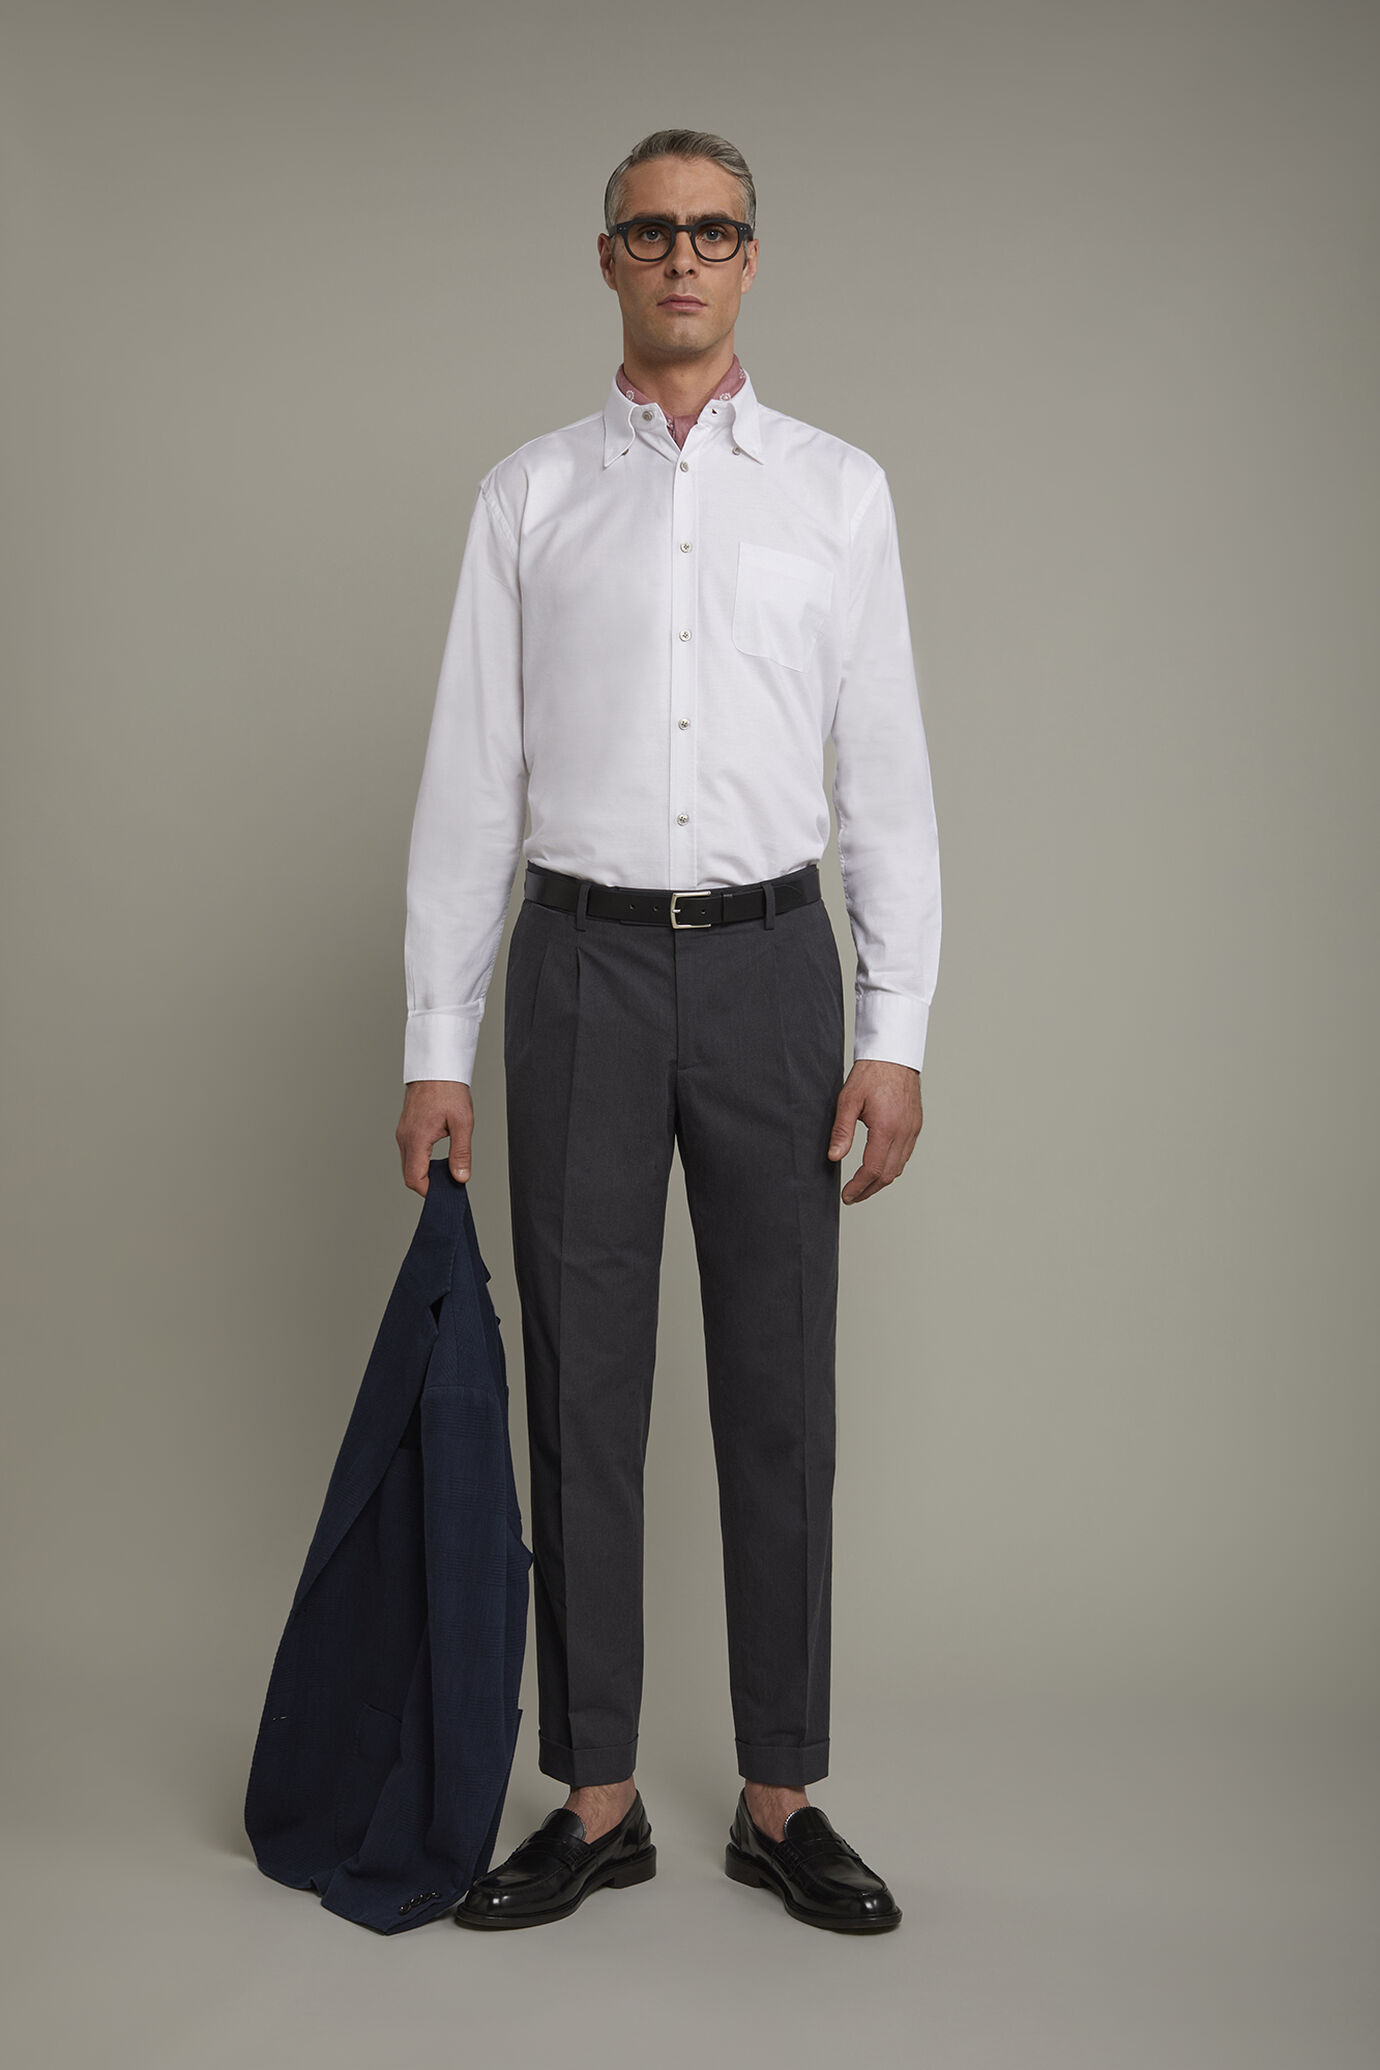 Camicia classica uomo collo button down tessuto Oxford rigato ultra leggero tinta unita comfort fit